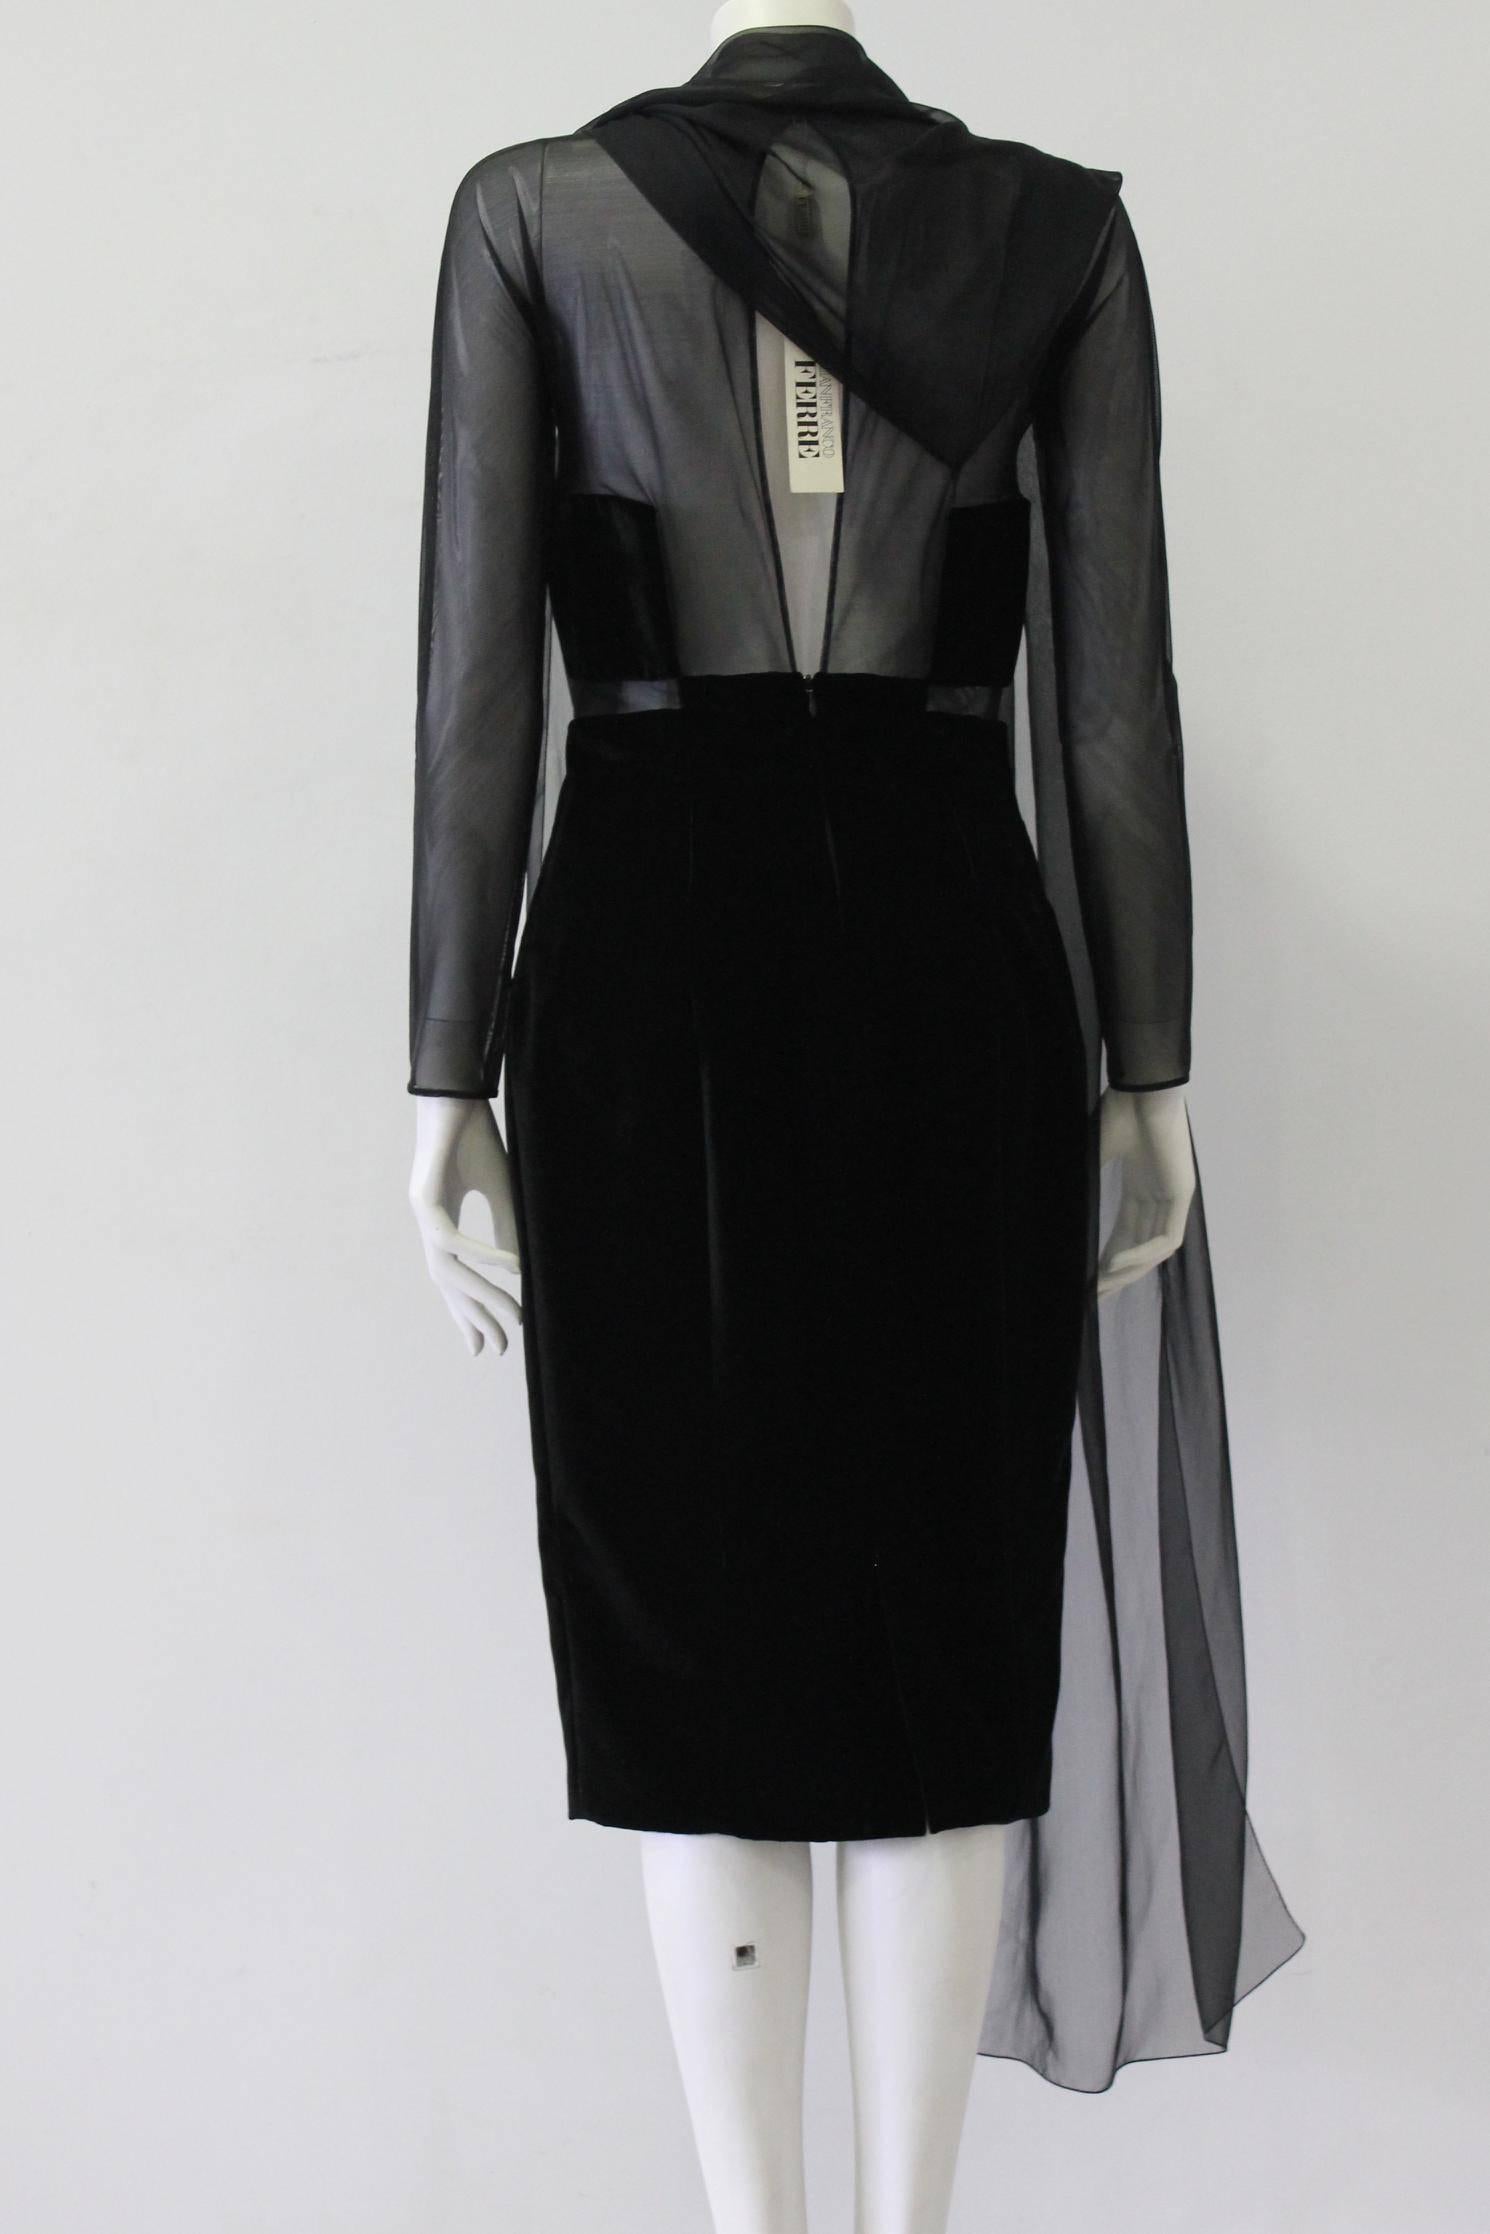 Women's Unique Gianfranco Ferre Sheer Velvet Cocktail Dress 1980s For Sale